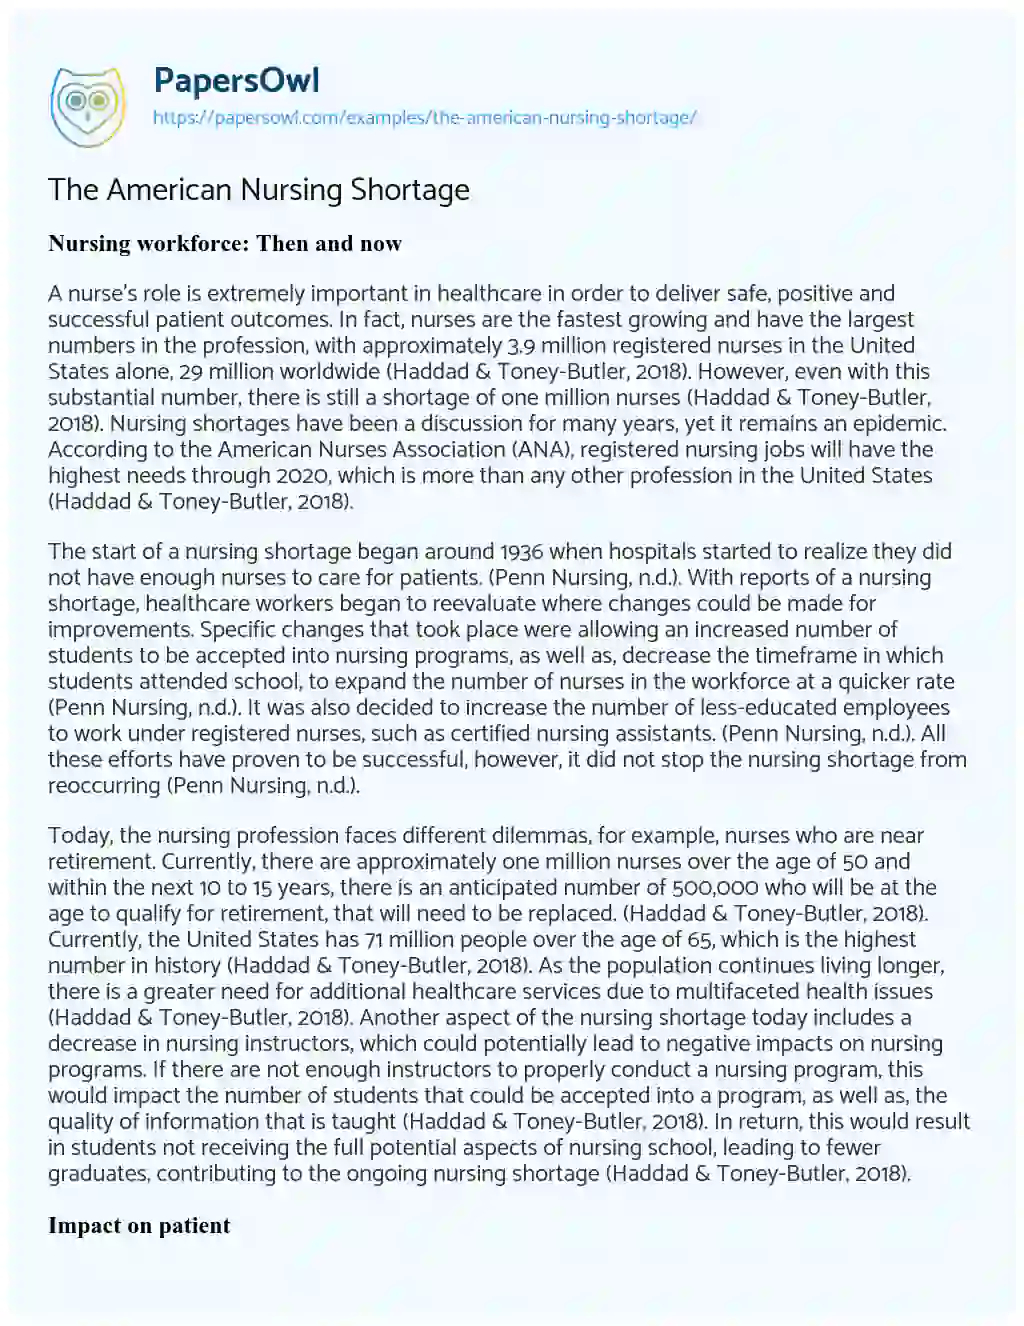 nursing shortage informative essay